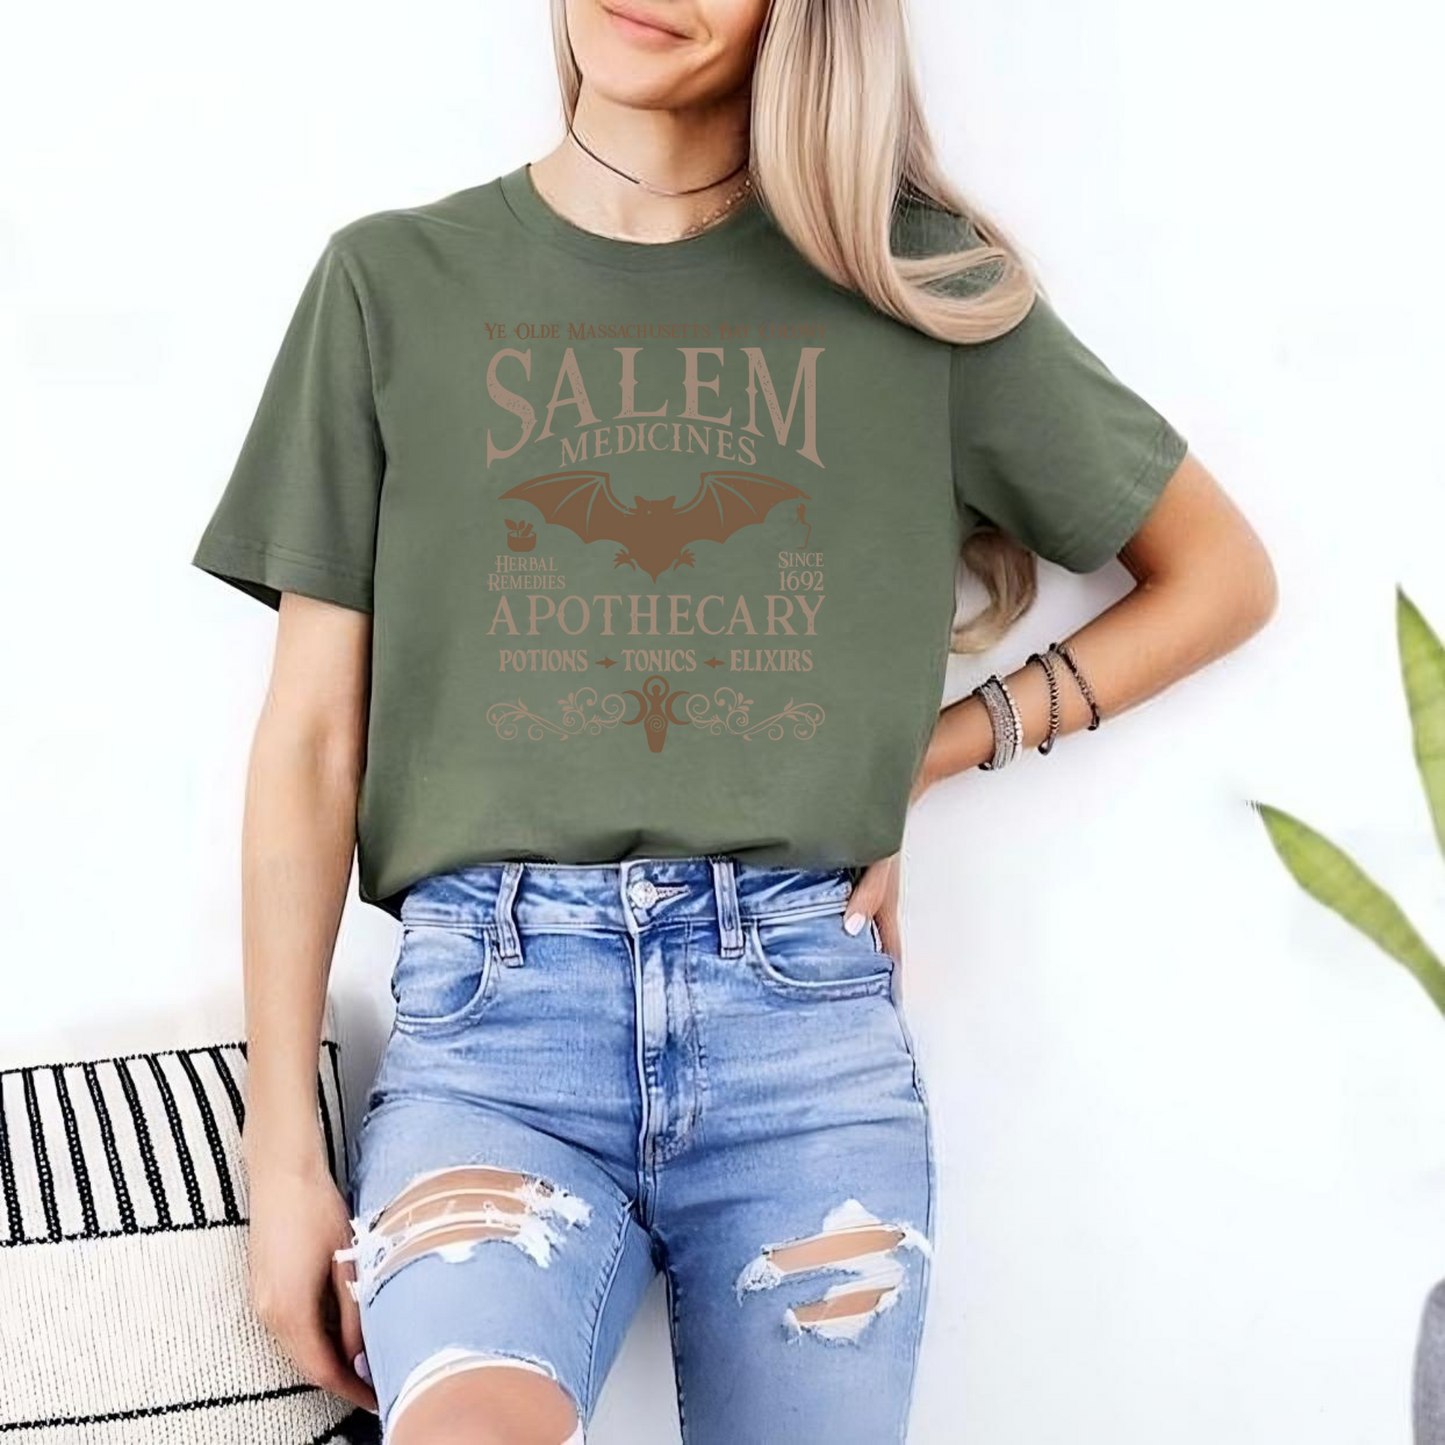 Salem Apothecary 1692 Sweatshirt - Halloween-Geschenk für Hexen- und Geschichtsfans